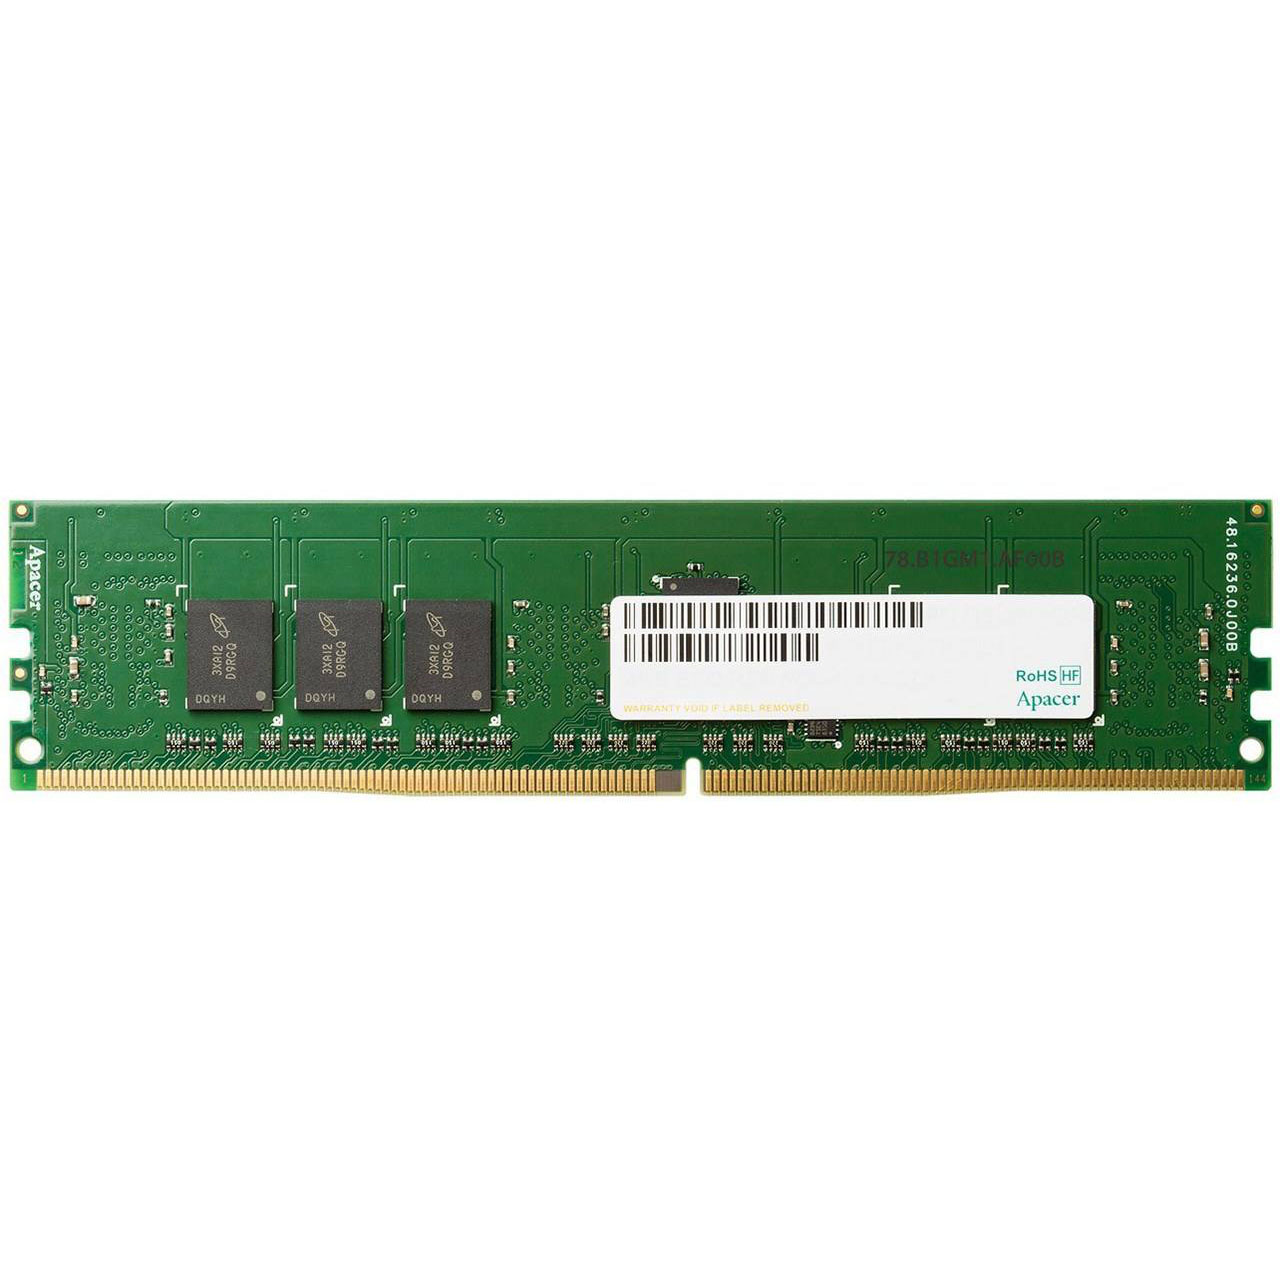 رم دسکتاپ DDR4 تک کاناله 2400 مگاهرتز CL17 اپیسر مدل 76A305 ظرفیت 2 گیگابایت